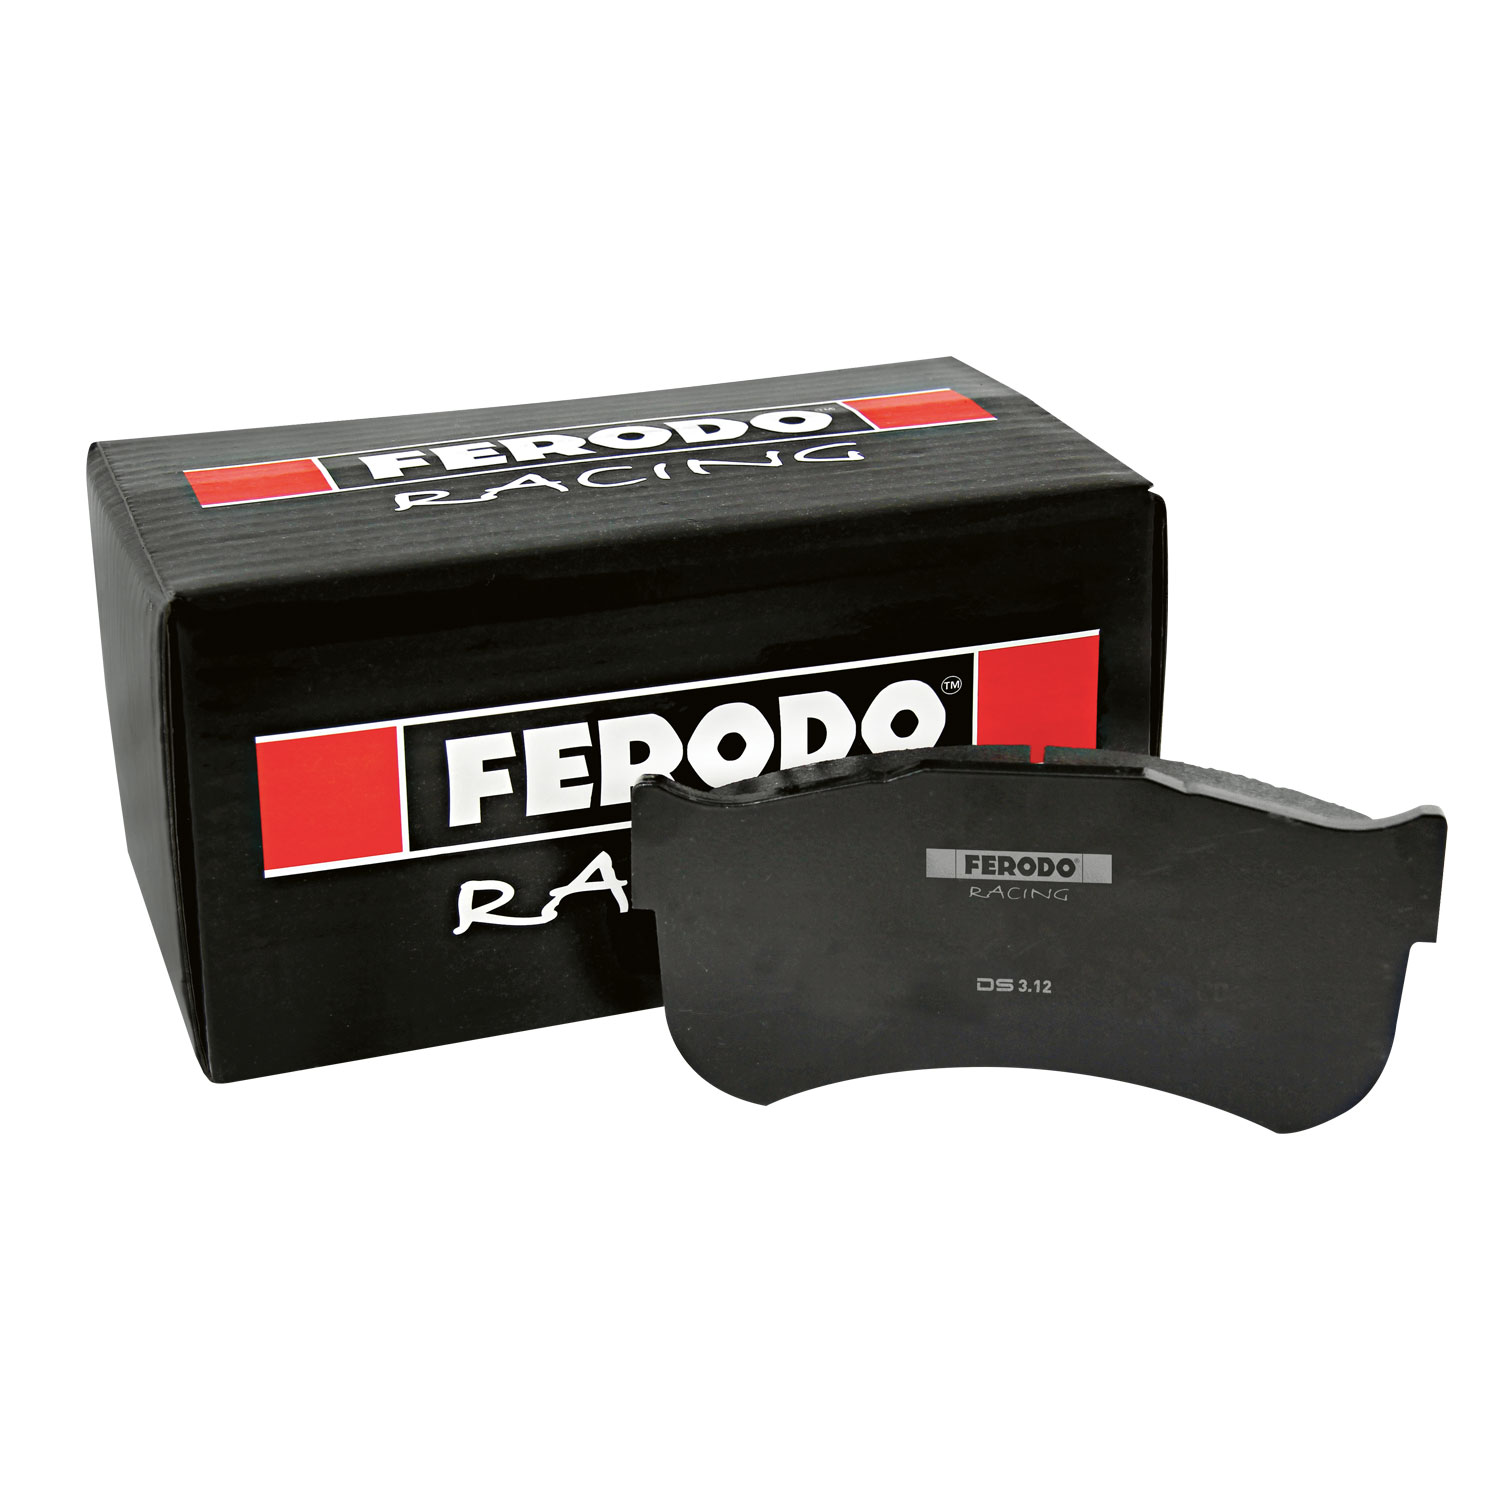 FERODO ds2500. Ds3000+03 FERODO. FERODO Racing ds3000 frp219r. Тормозные колодки Феродо. Тормозные феродо купить